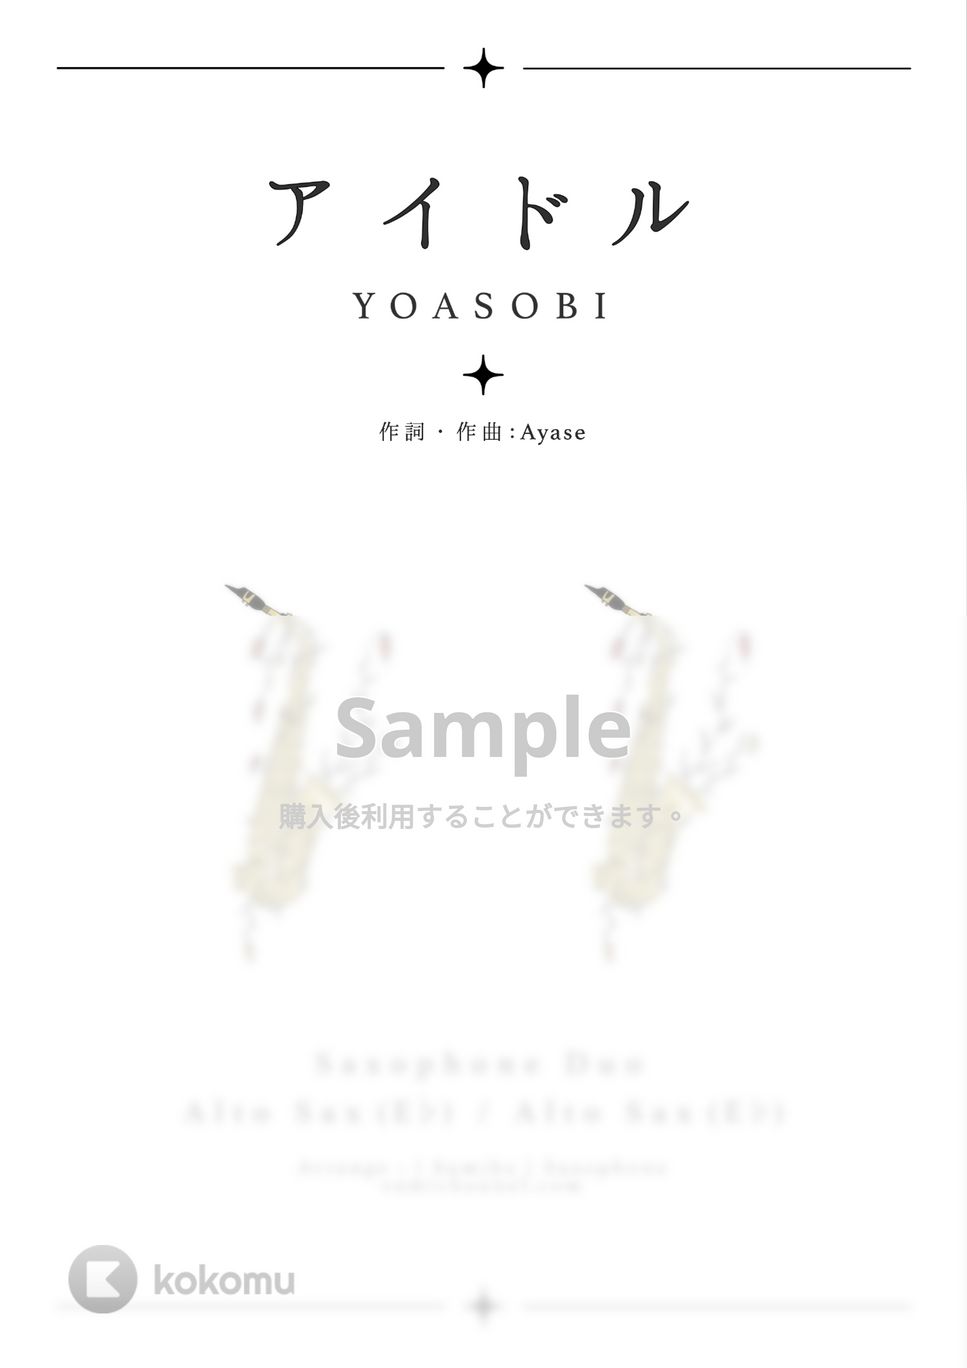 YOASOBI - アイドル (A.sax 2重奏) by Sumika